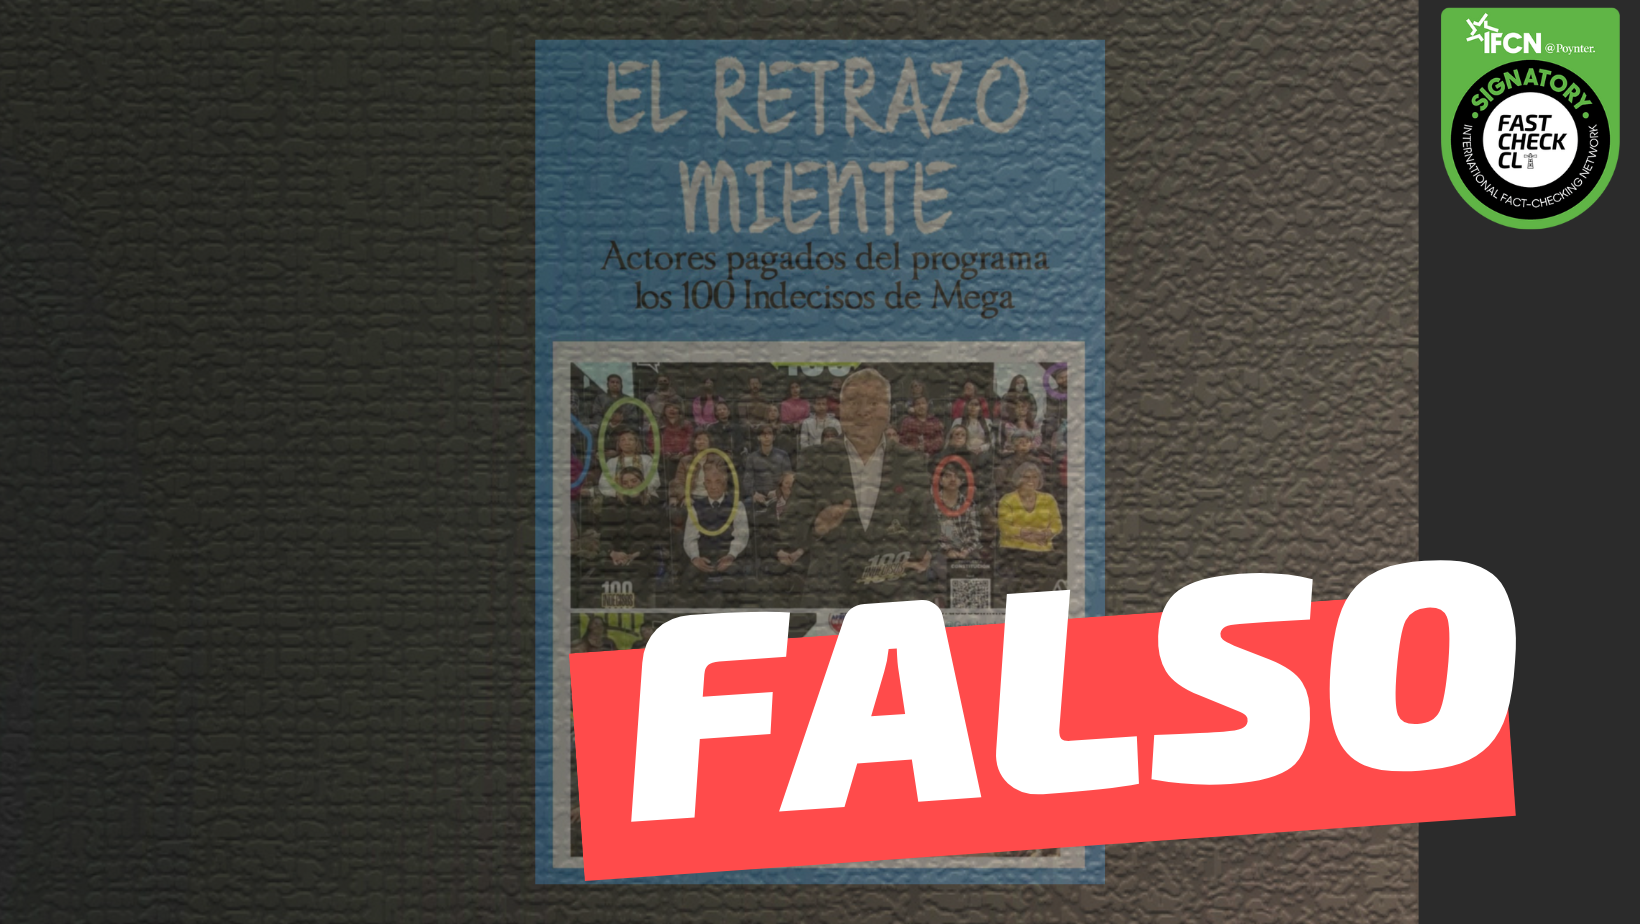 You are currently viewing (Imagen) “Estos son los actores pagados del programa los 100 Indecisos de Mega”: #Falso